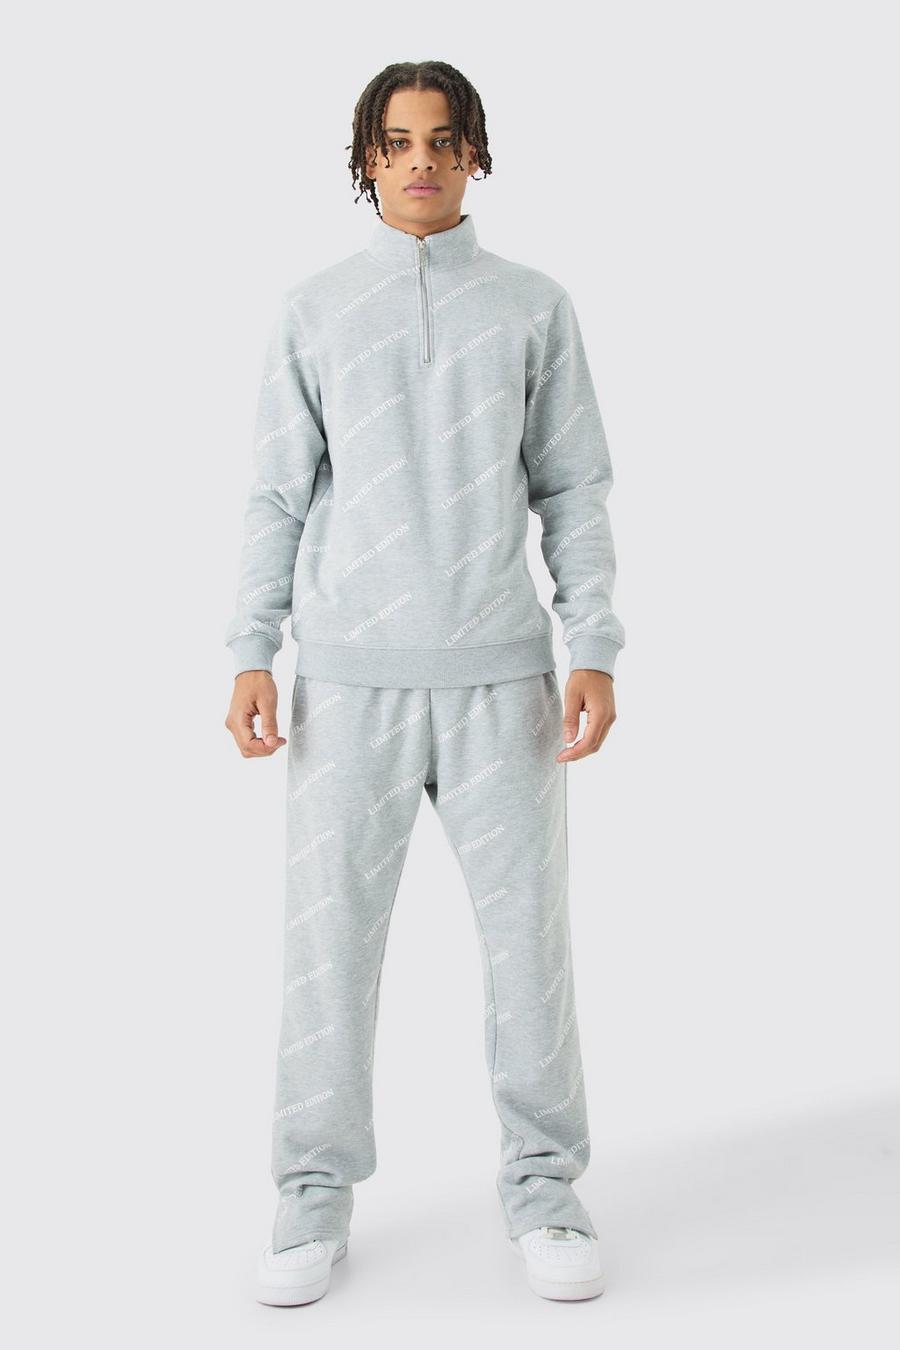 Limited Edition Trainingsanzug mit Print und Reißverschluss, Grey marl